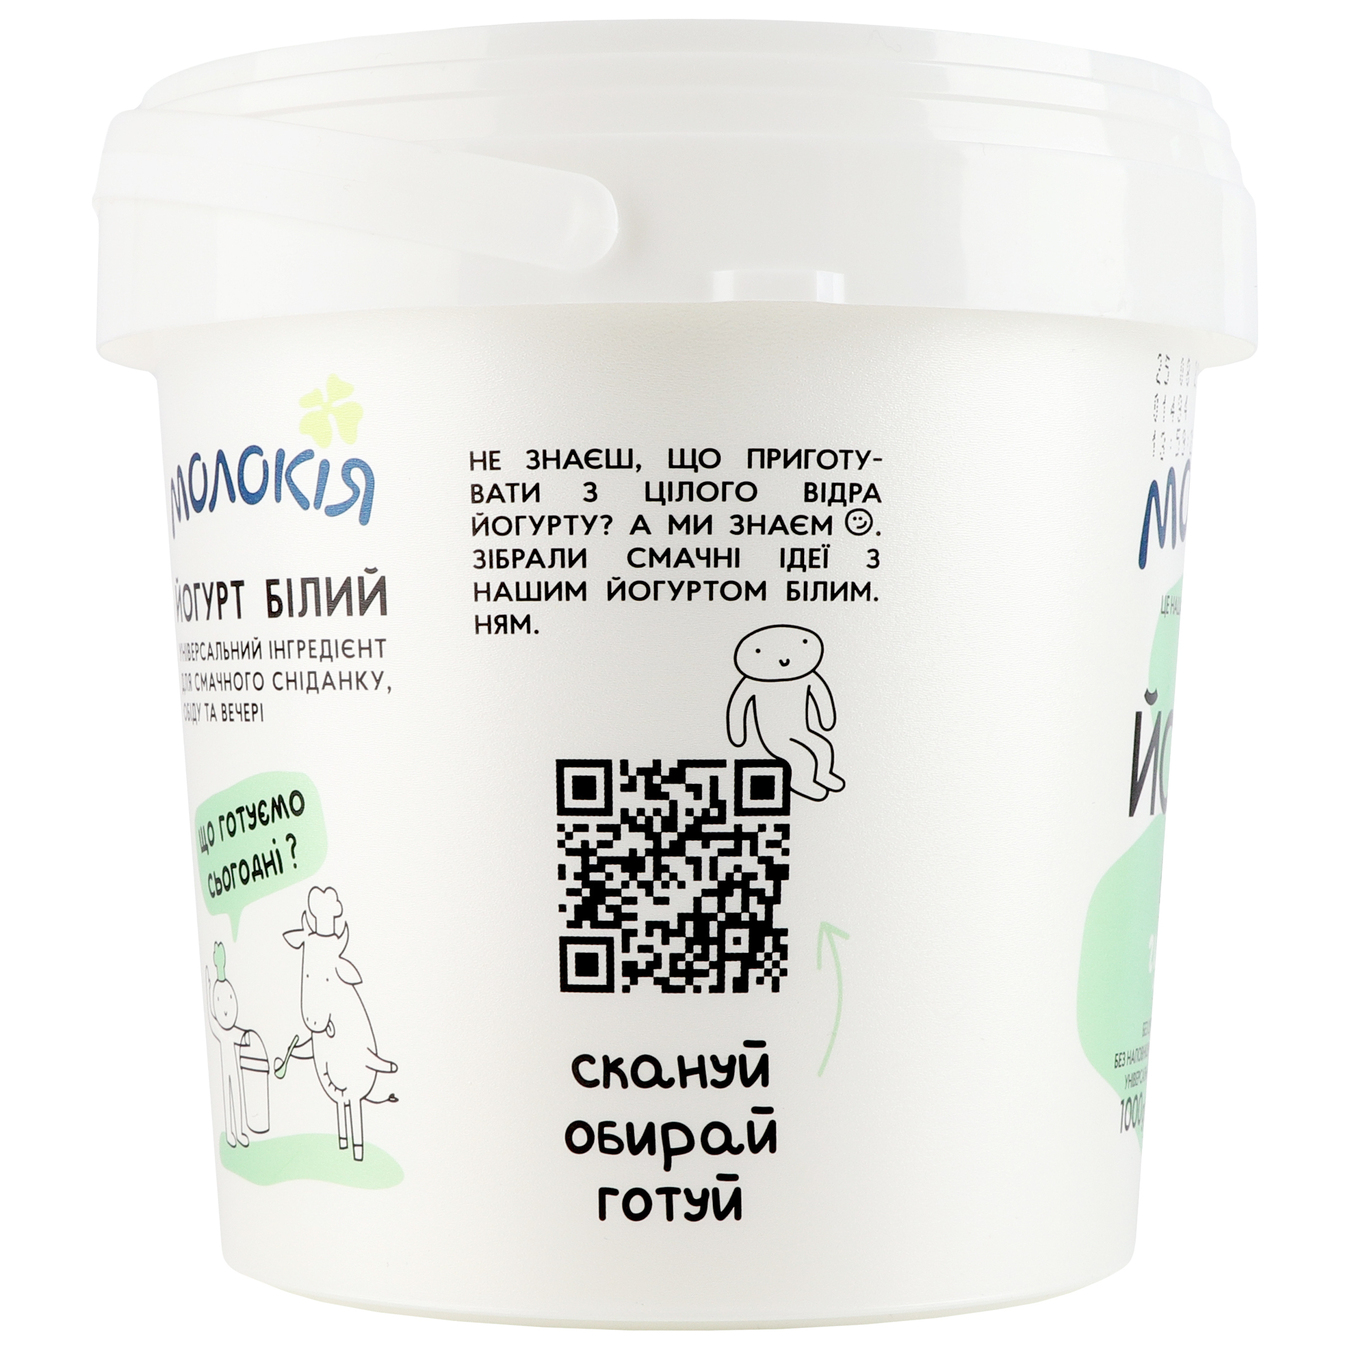 Йогурт білий Молокія 3% відро 1кг 4